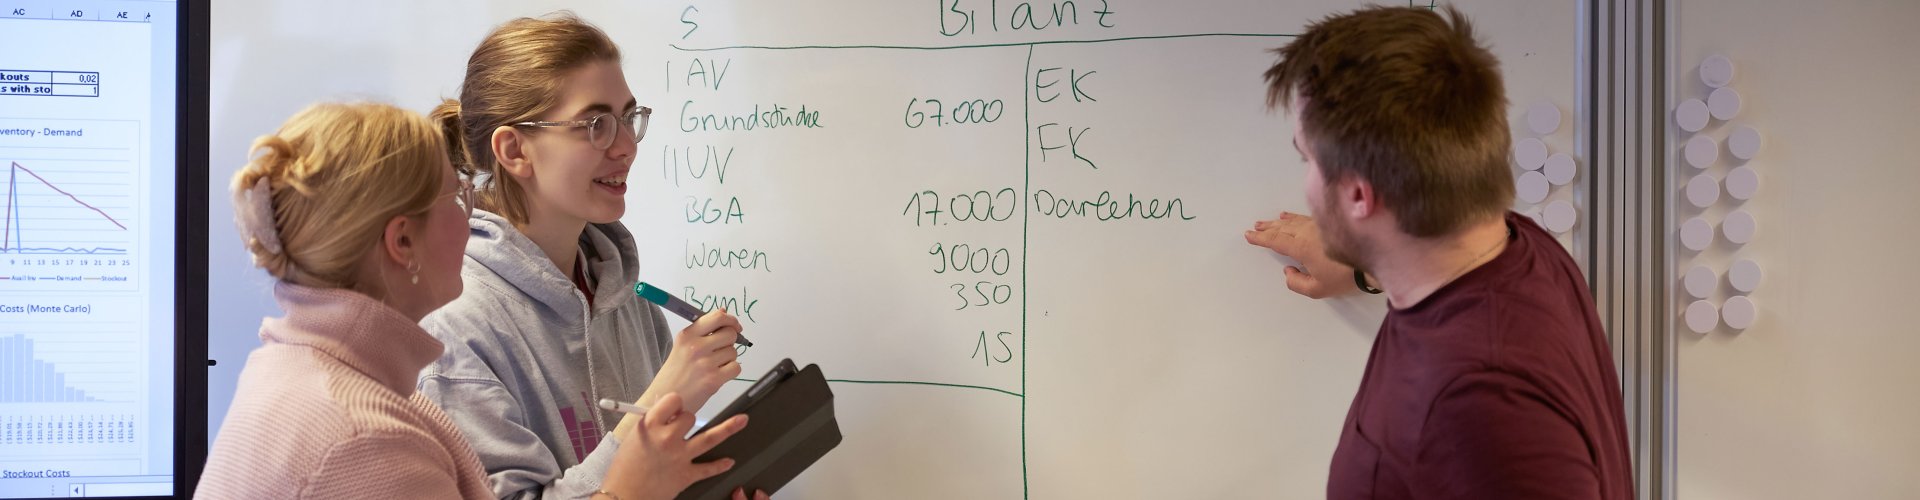 Drei Studierende an inem Whiteboard, es ist u.a. das Wort "Bilanz" zu erkennen.